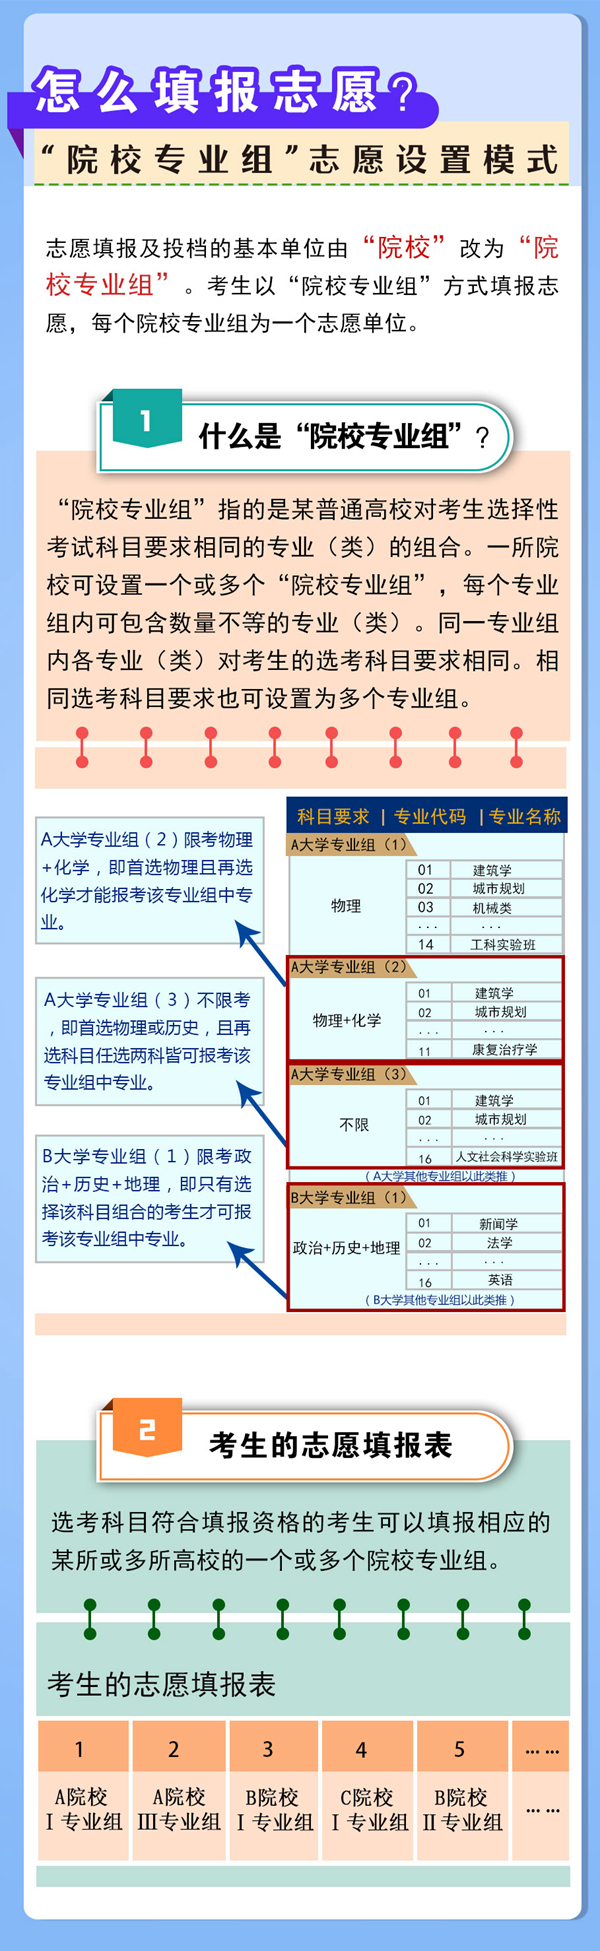 河南启动高考综合改革 2022年秋季入学普通高一学生开始取消文理分科